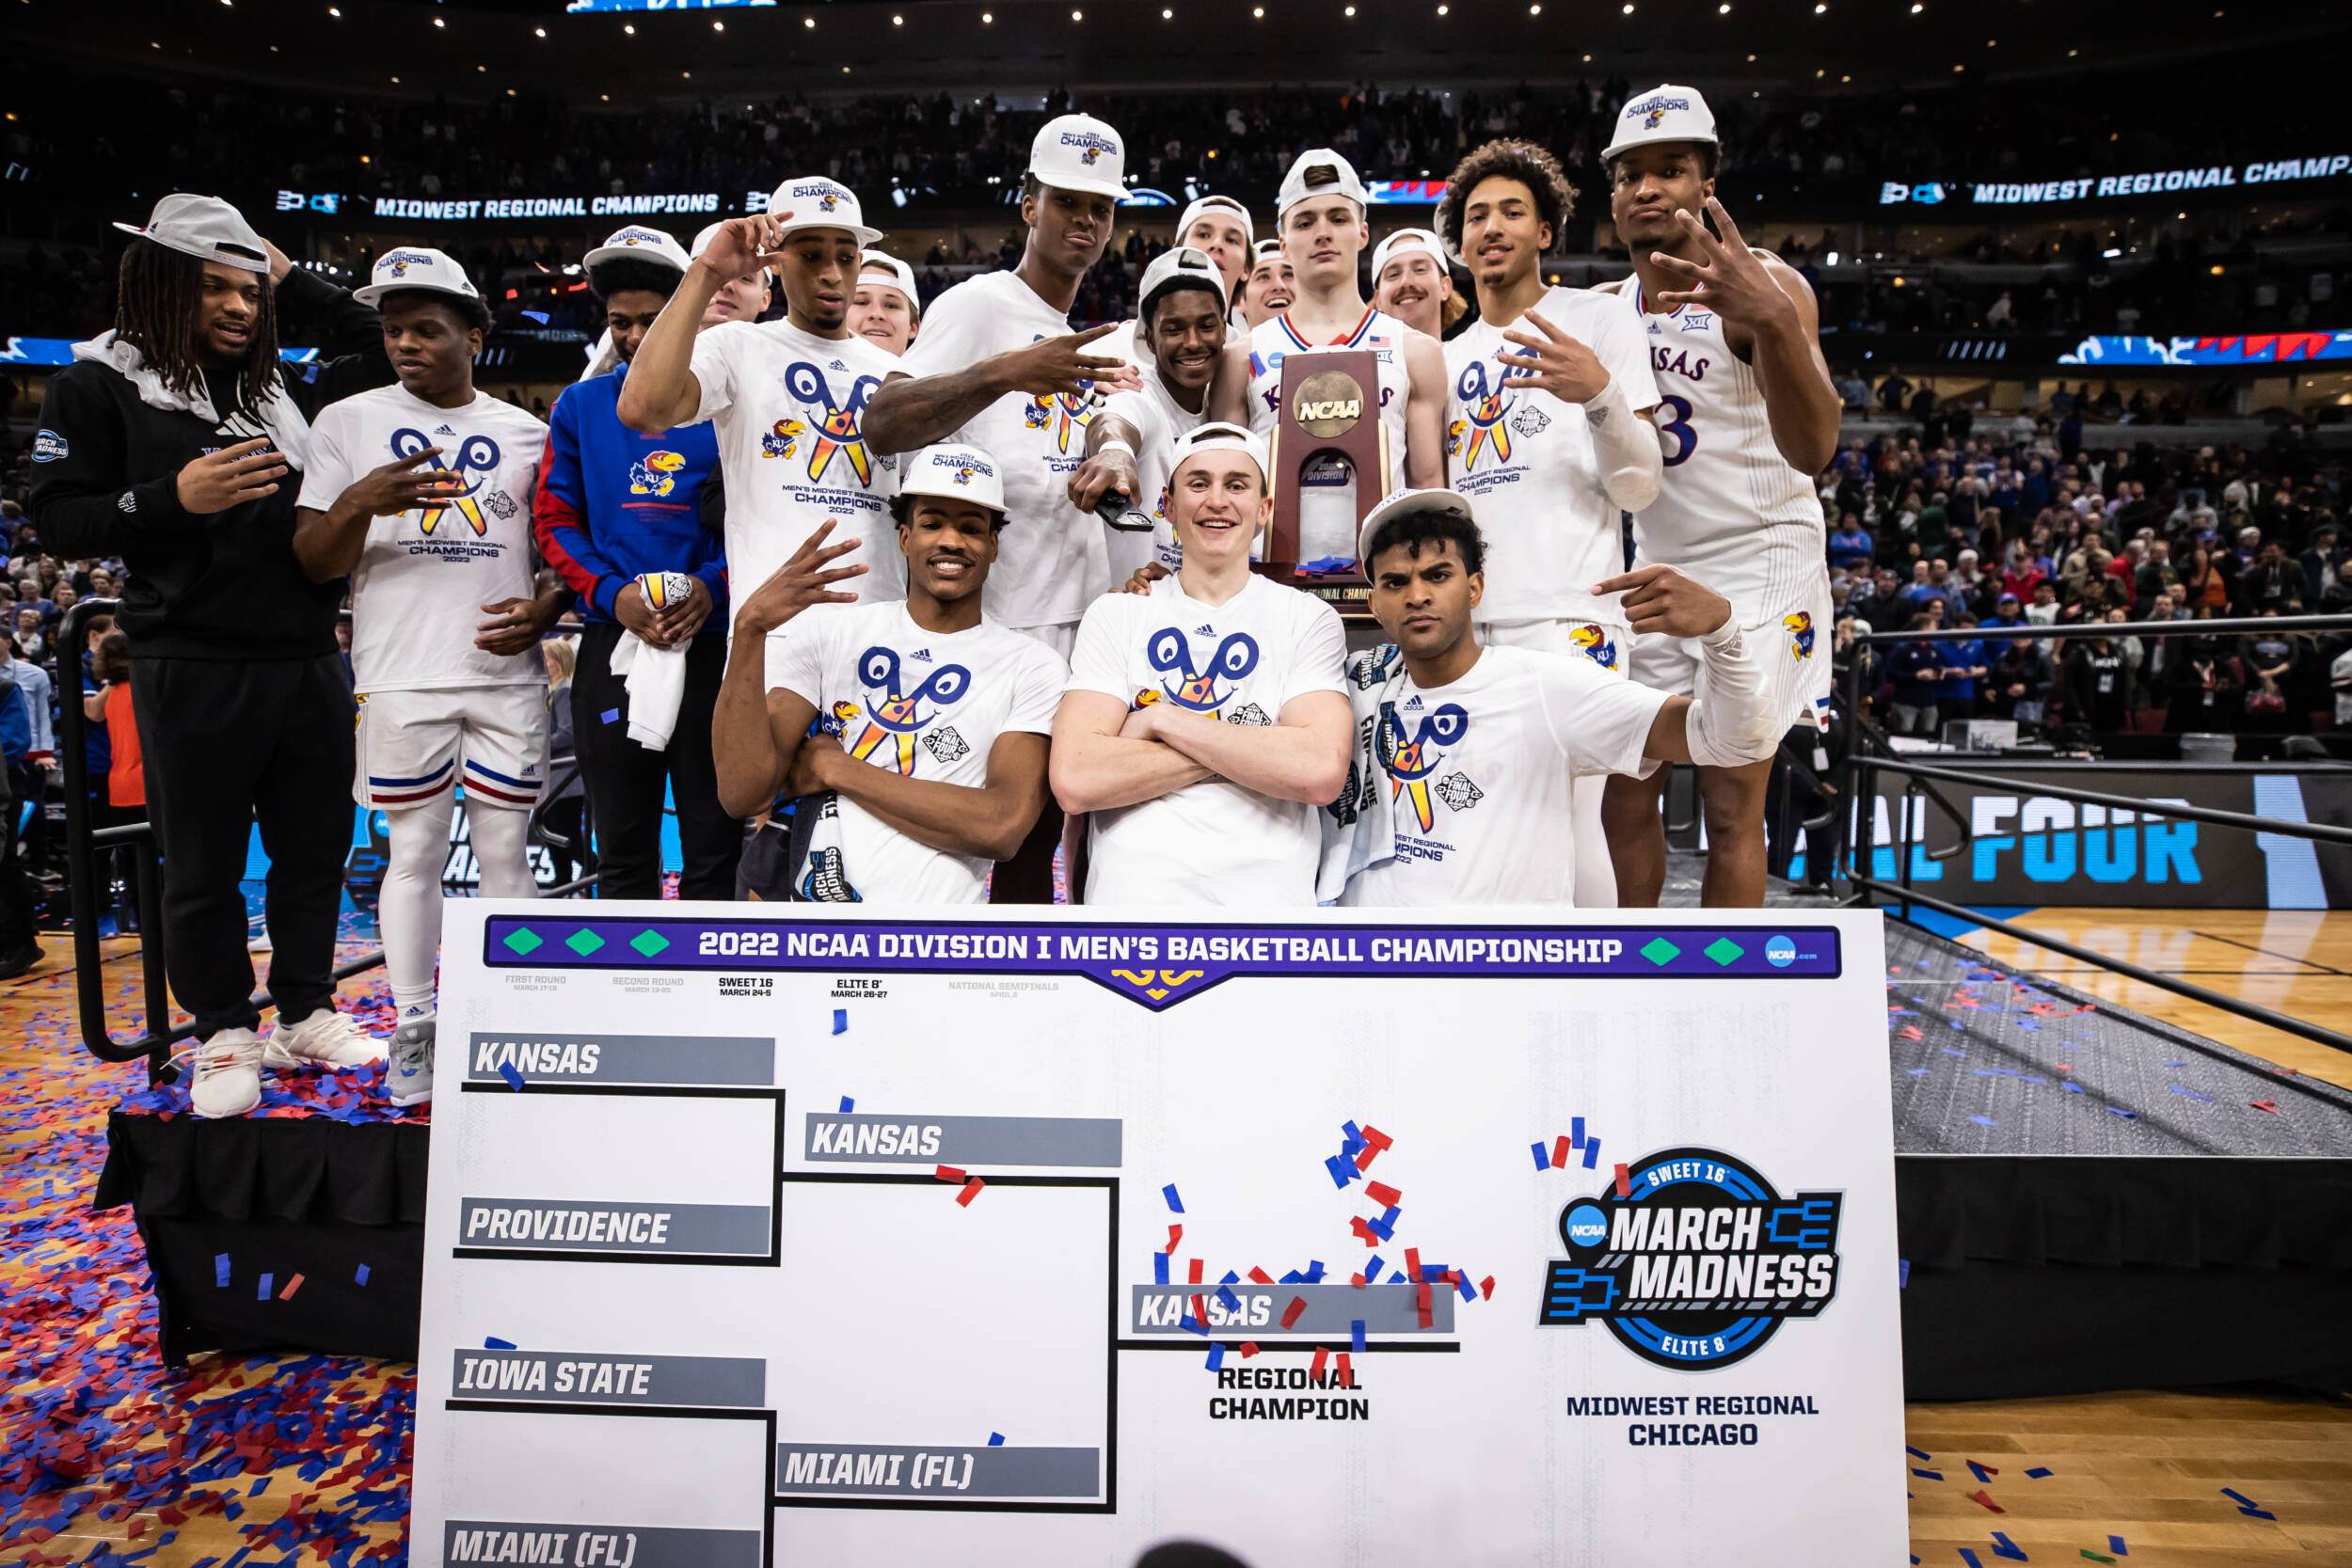 Kansas tops Miami (FL) in 2022 NCAA men's tournament